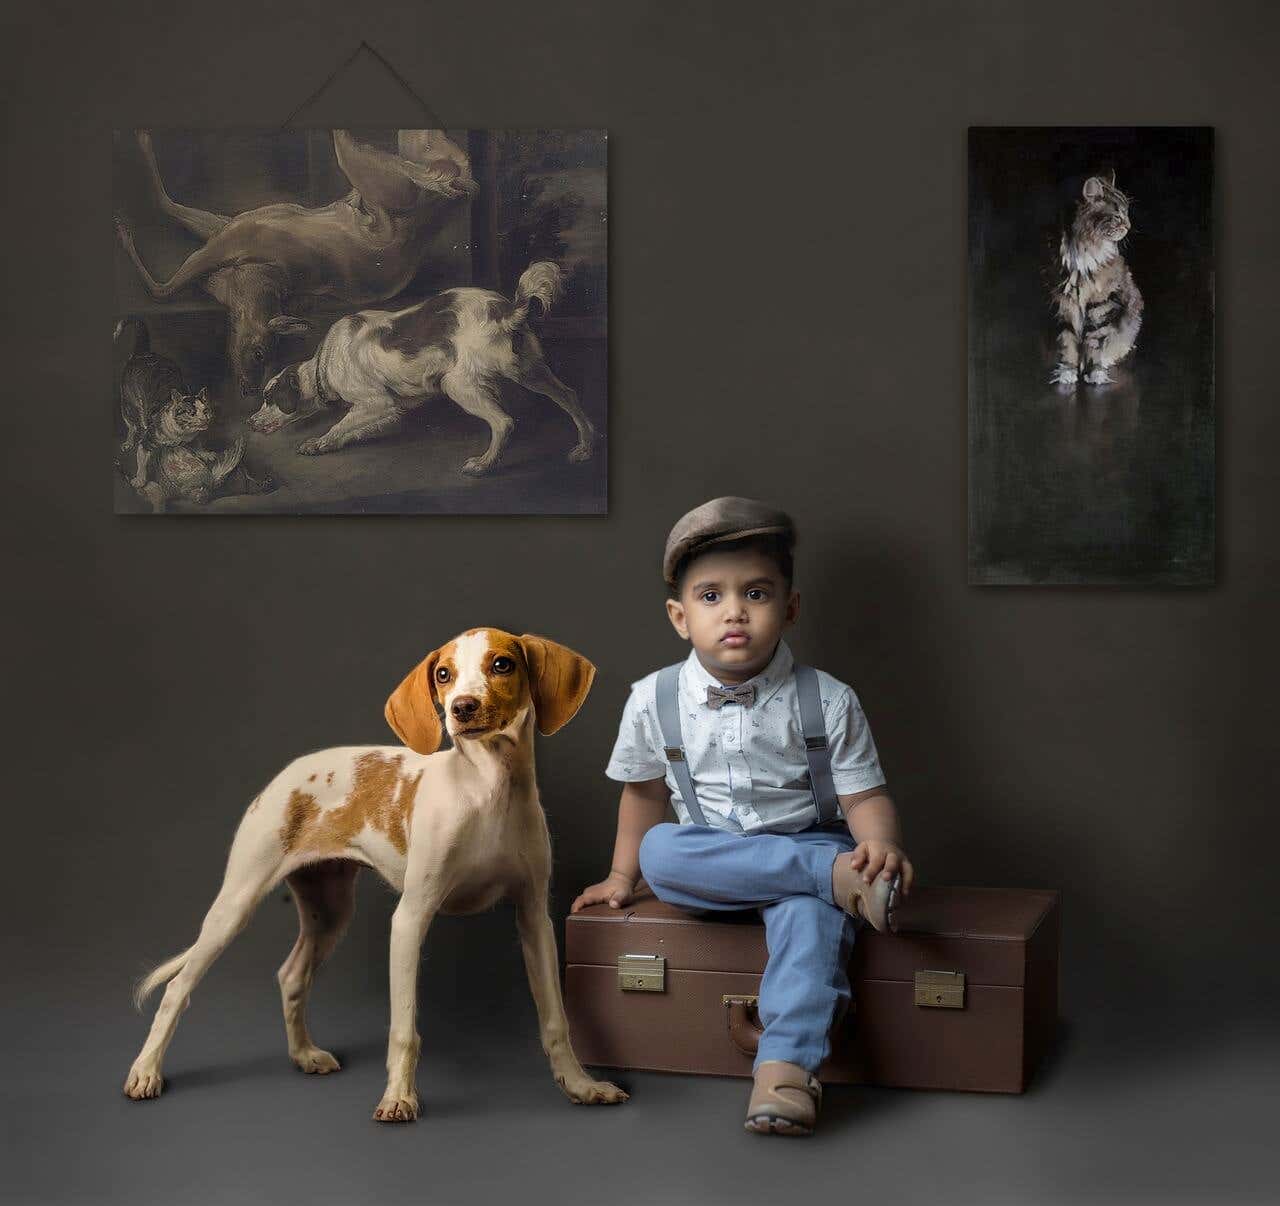 Niño sentado en una maleta acompañado de un perro con fondo oscuro y cuadros de animales.